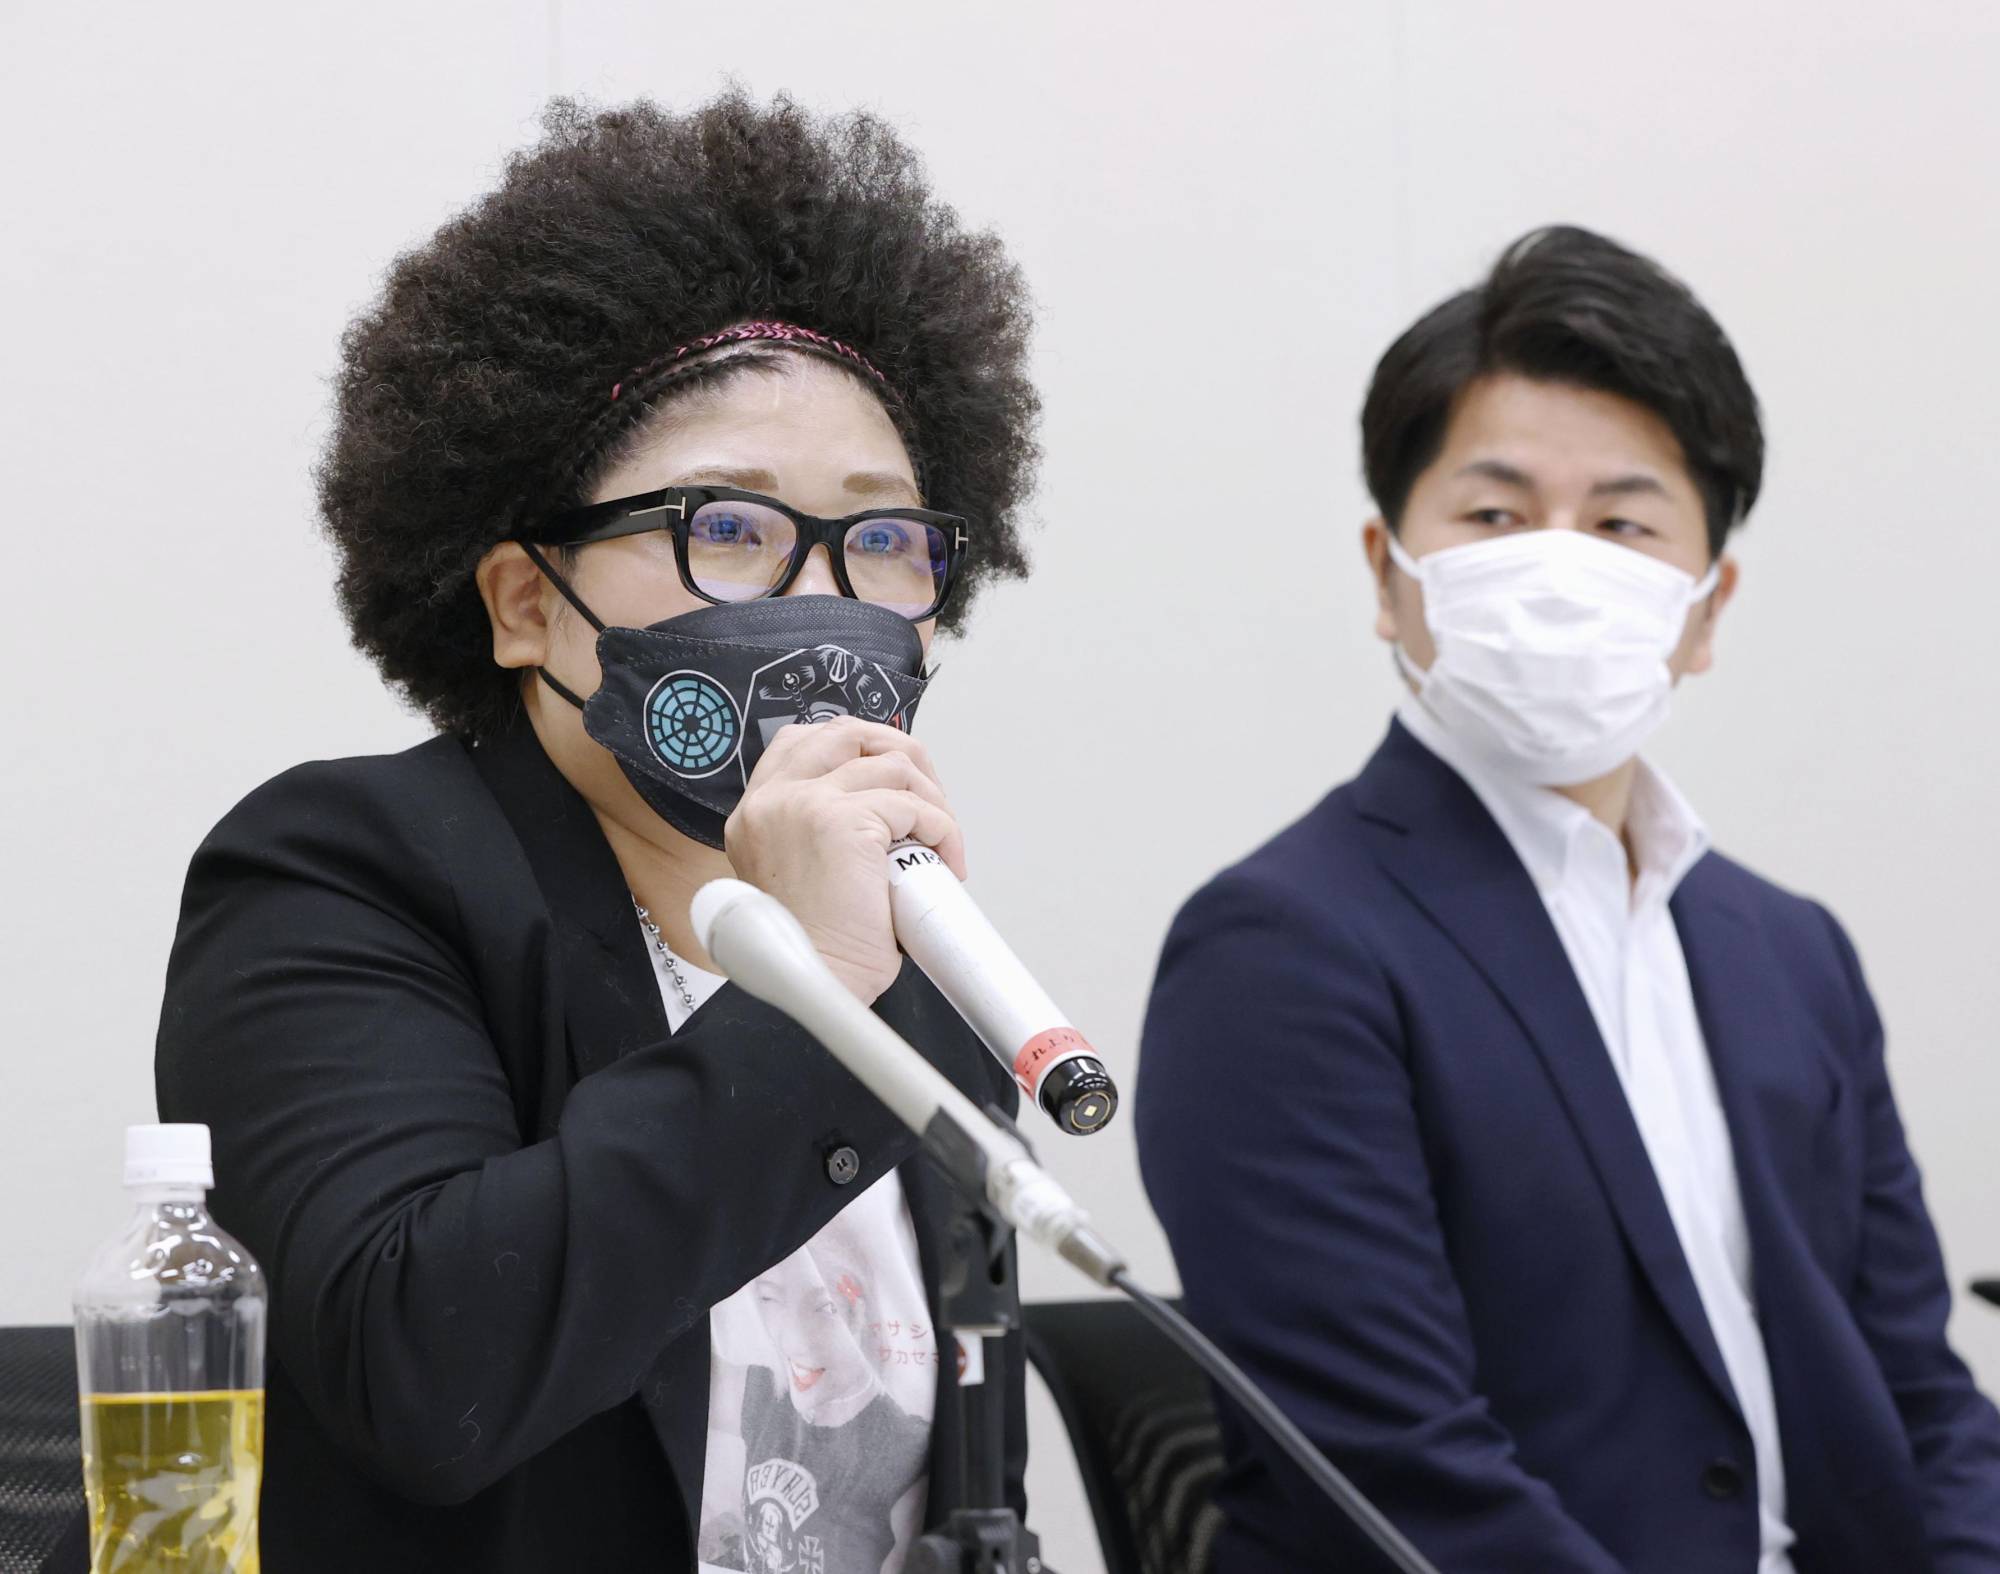 In Giappone puoi finire fino a un anno di prigione per insulti su Internet